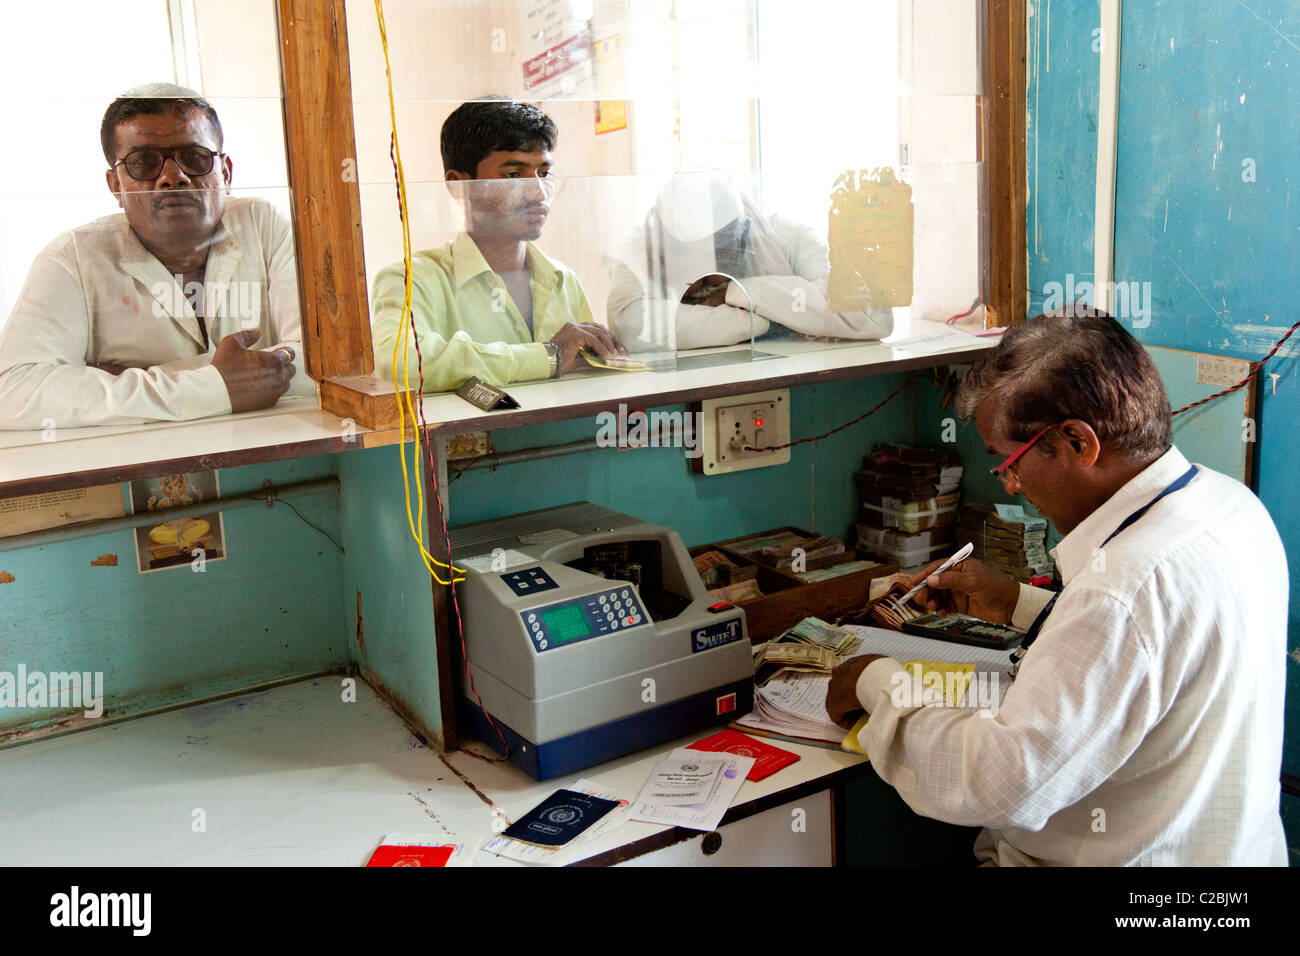 Les clients d'être servis dans une banque rurale dans le village de Valsang Maharashtra Inde Banque D'Images